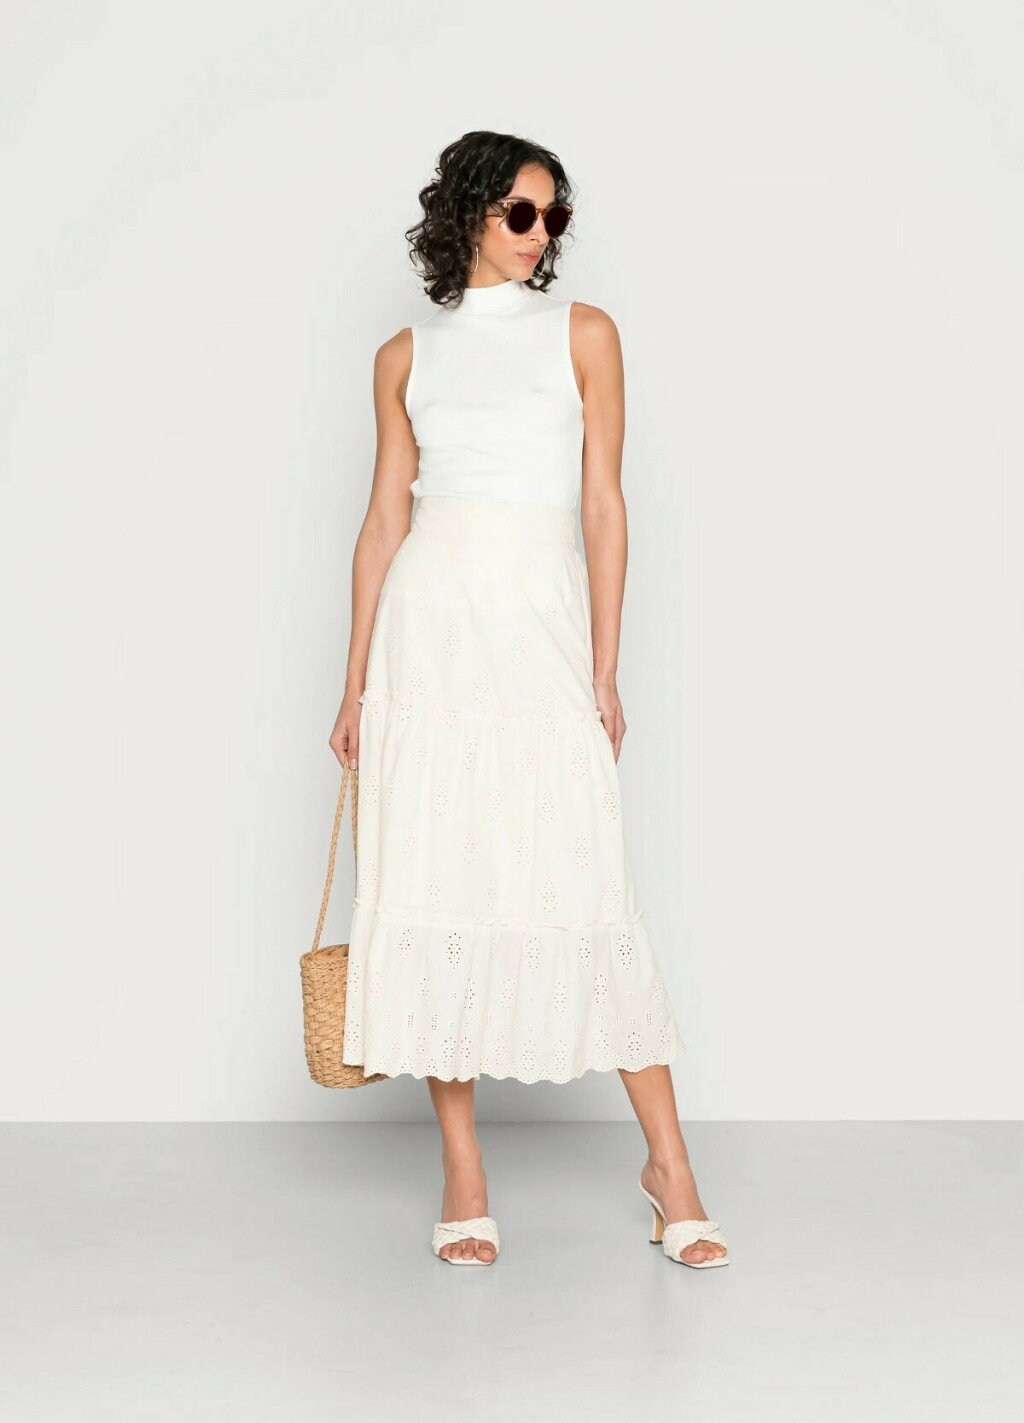 Bijele suknje u trgovinama - 2